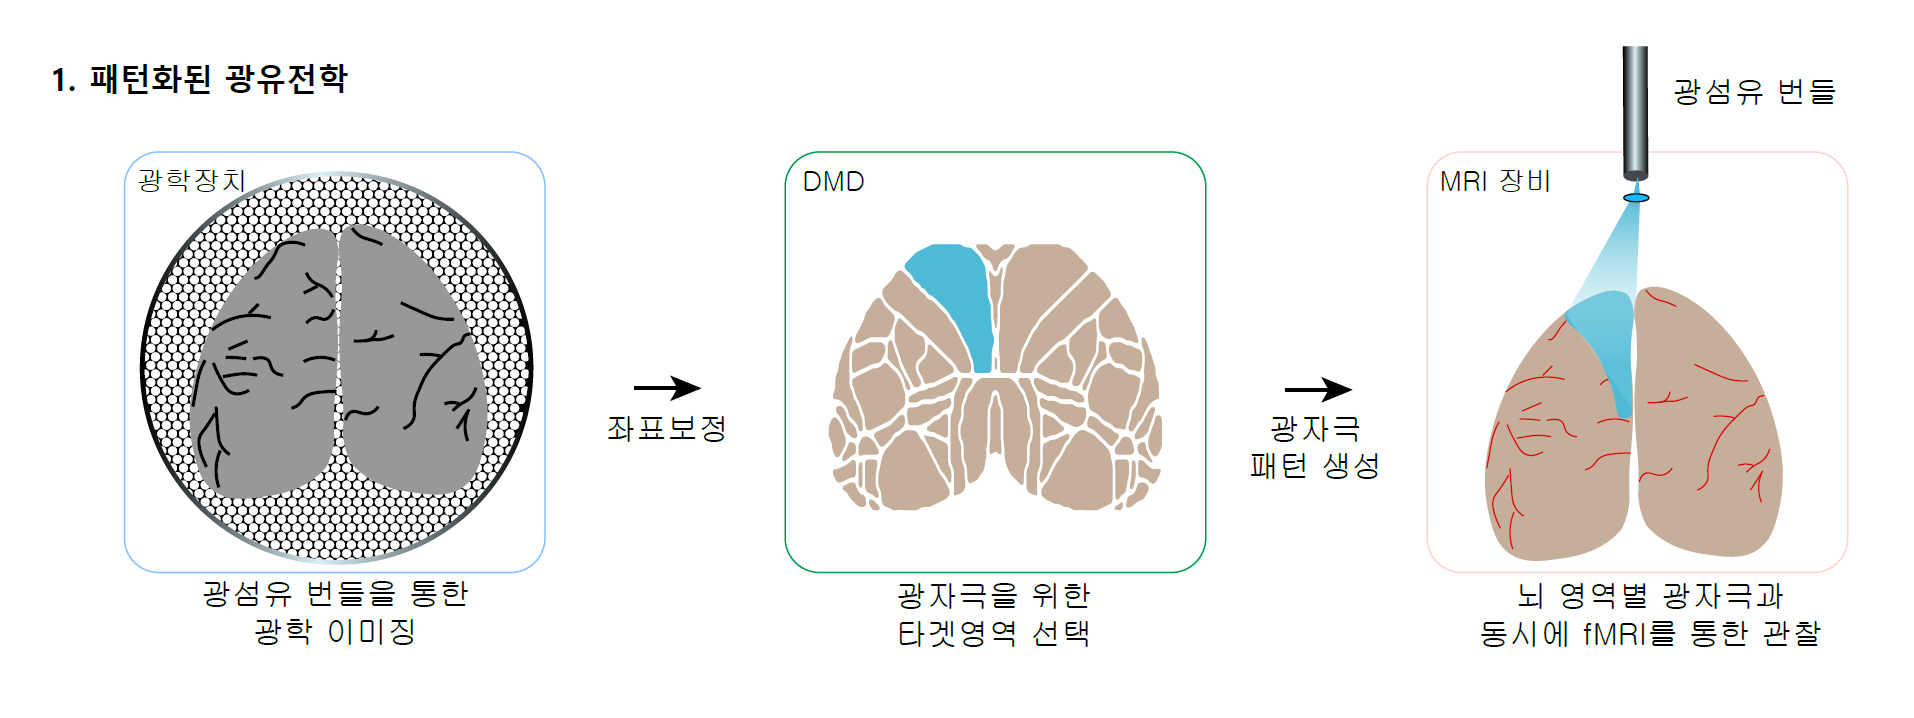 [그림2] 전체 광유전학 fMRI 시스템
            (왼쪽) 광학 이미징 모듈에 의해 획득된 뇌의 광 이미지(뇌를 위에서 내려다보는 방향). 이 이미지를 기준으로 대뇌 피질 영역들의 위치를 보정한다. (중간) 총 56개의 대뇌 피질 영역 중 목표 영역을 설정하고(파란색 영역), DMD로 그에 해당하는 이미지를 생성한다. (오른쪽) 이렇게 생성된 이미지는 광섬유 번들을 통해 뇌로 전달되어 해당 영역에 있는 신경 세포 활동이 활성화 된다. 이로 인해 유발되는 뇌 전체의 변화는 fMRI로 측정된다.